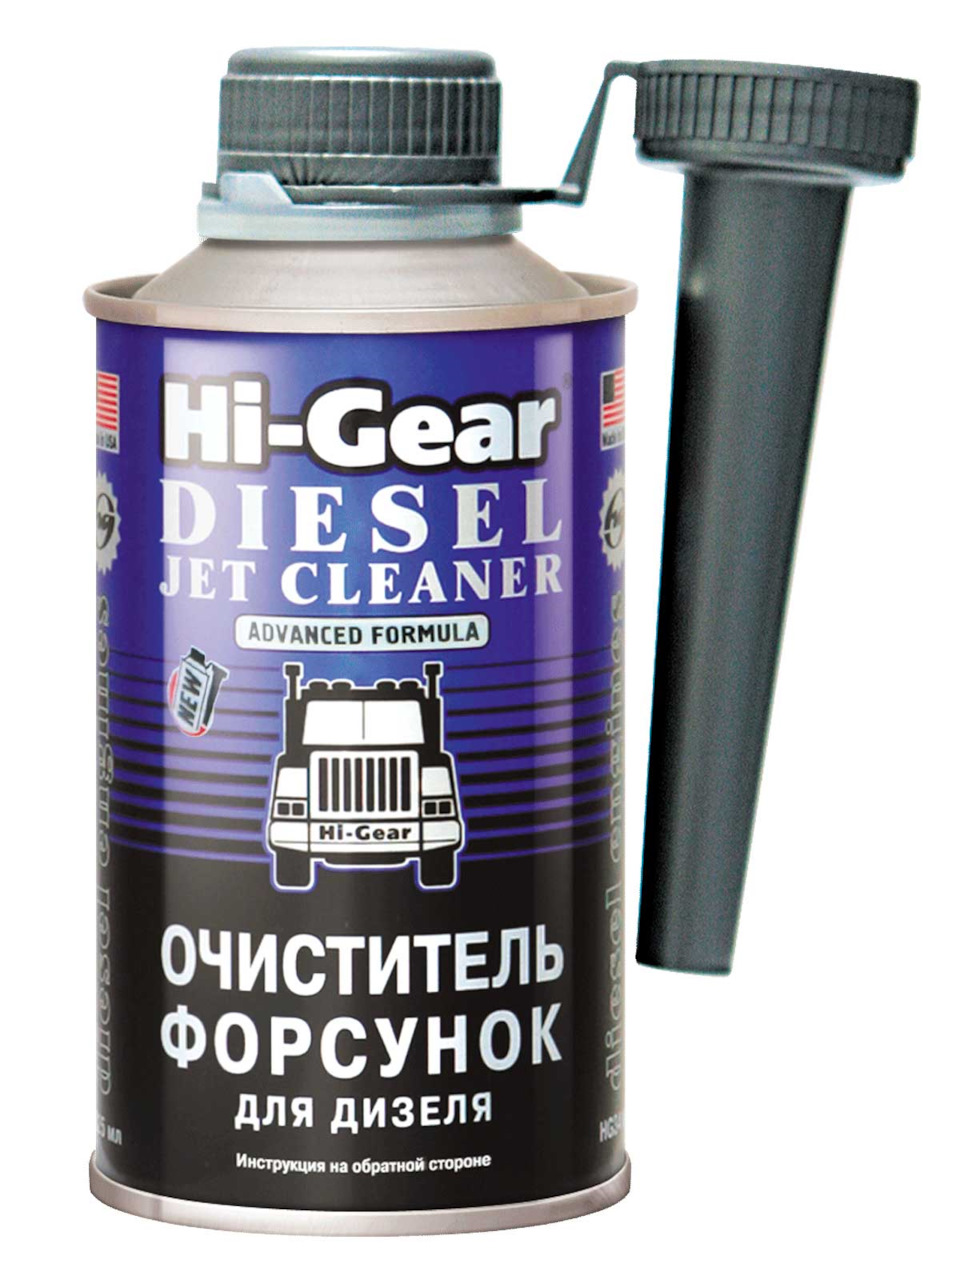 Очиститель форсунок для дизеля Hi-Gear. — Volkswagen Passat CC, 2 л .